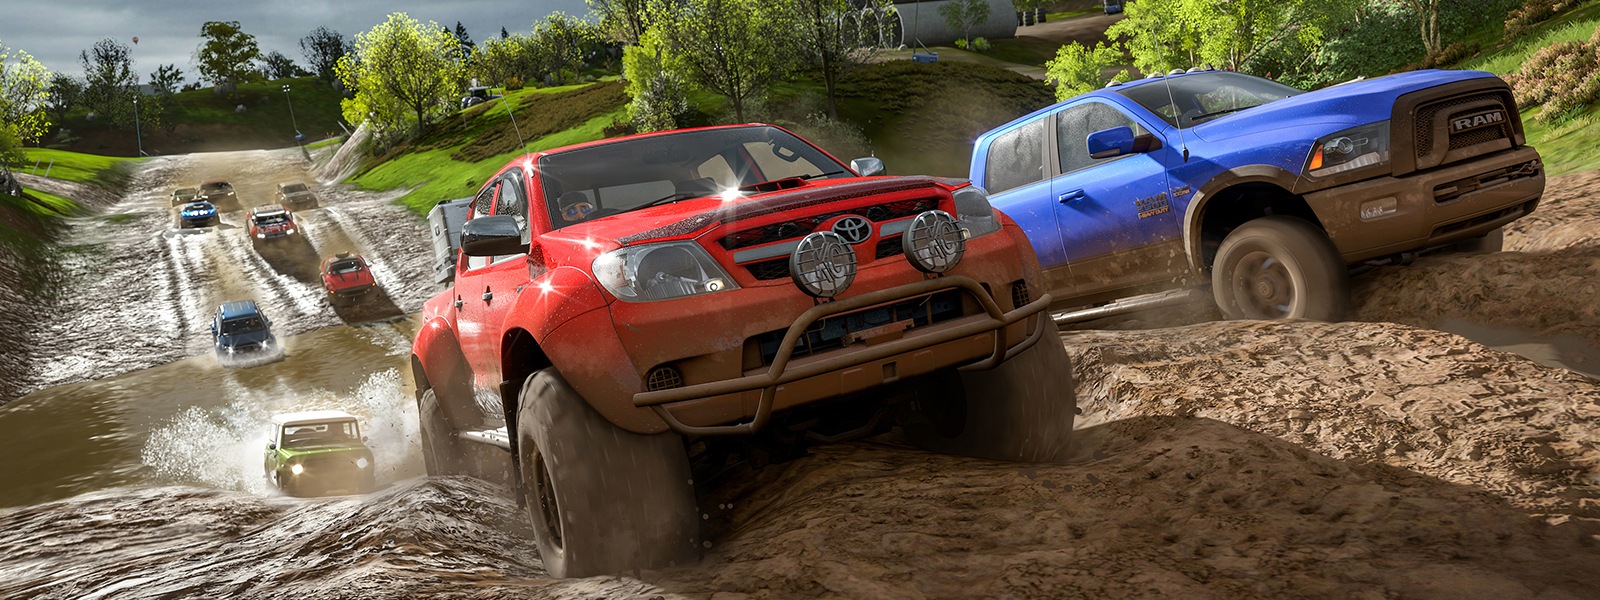 Trucks racing through the mud in Forza Horizon 4